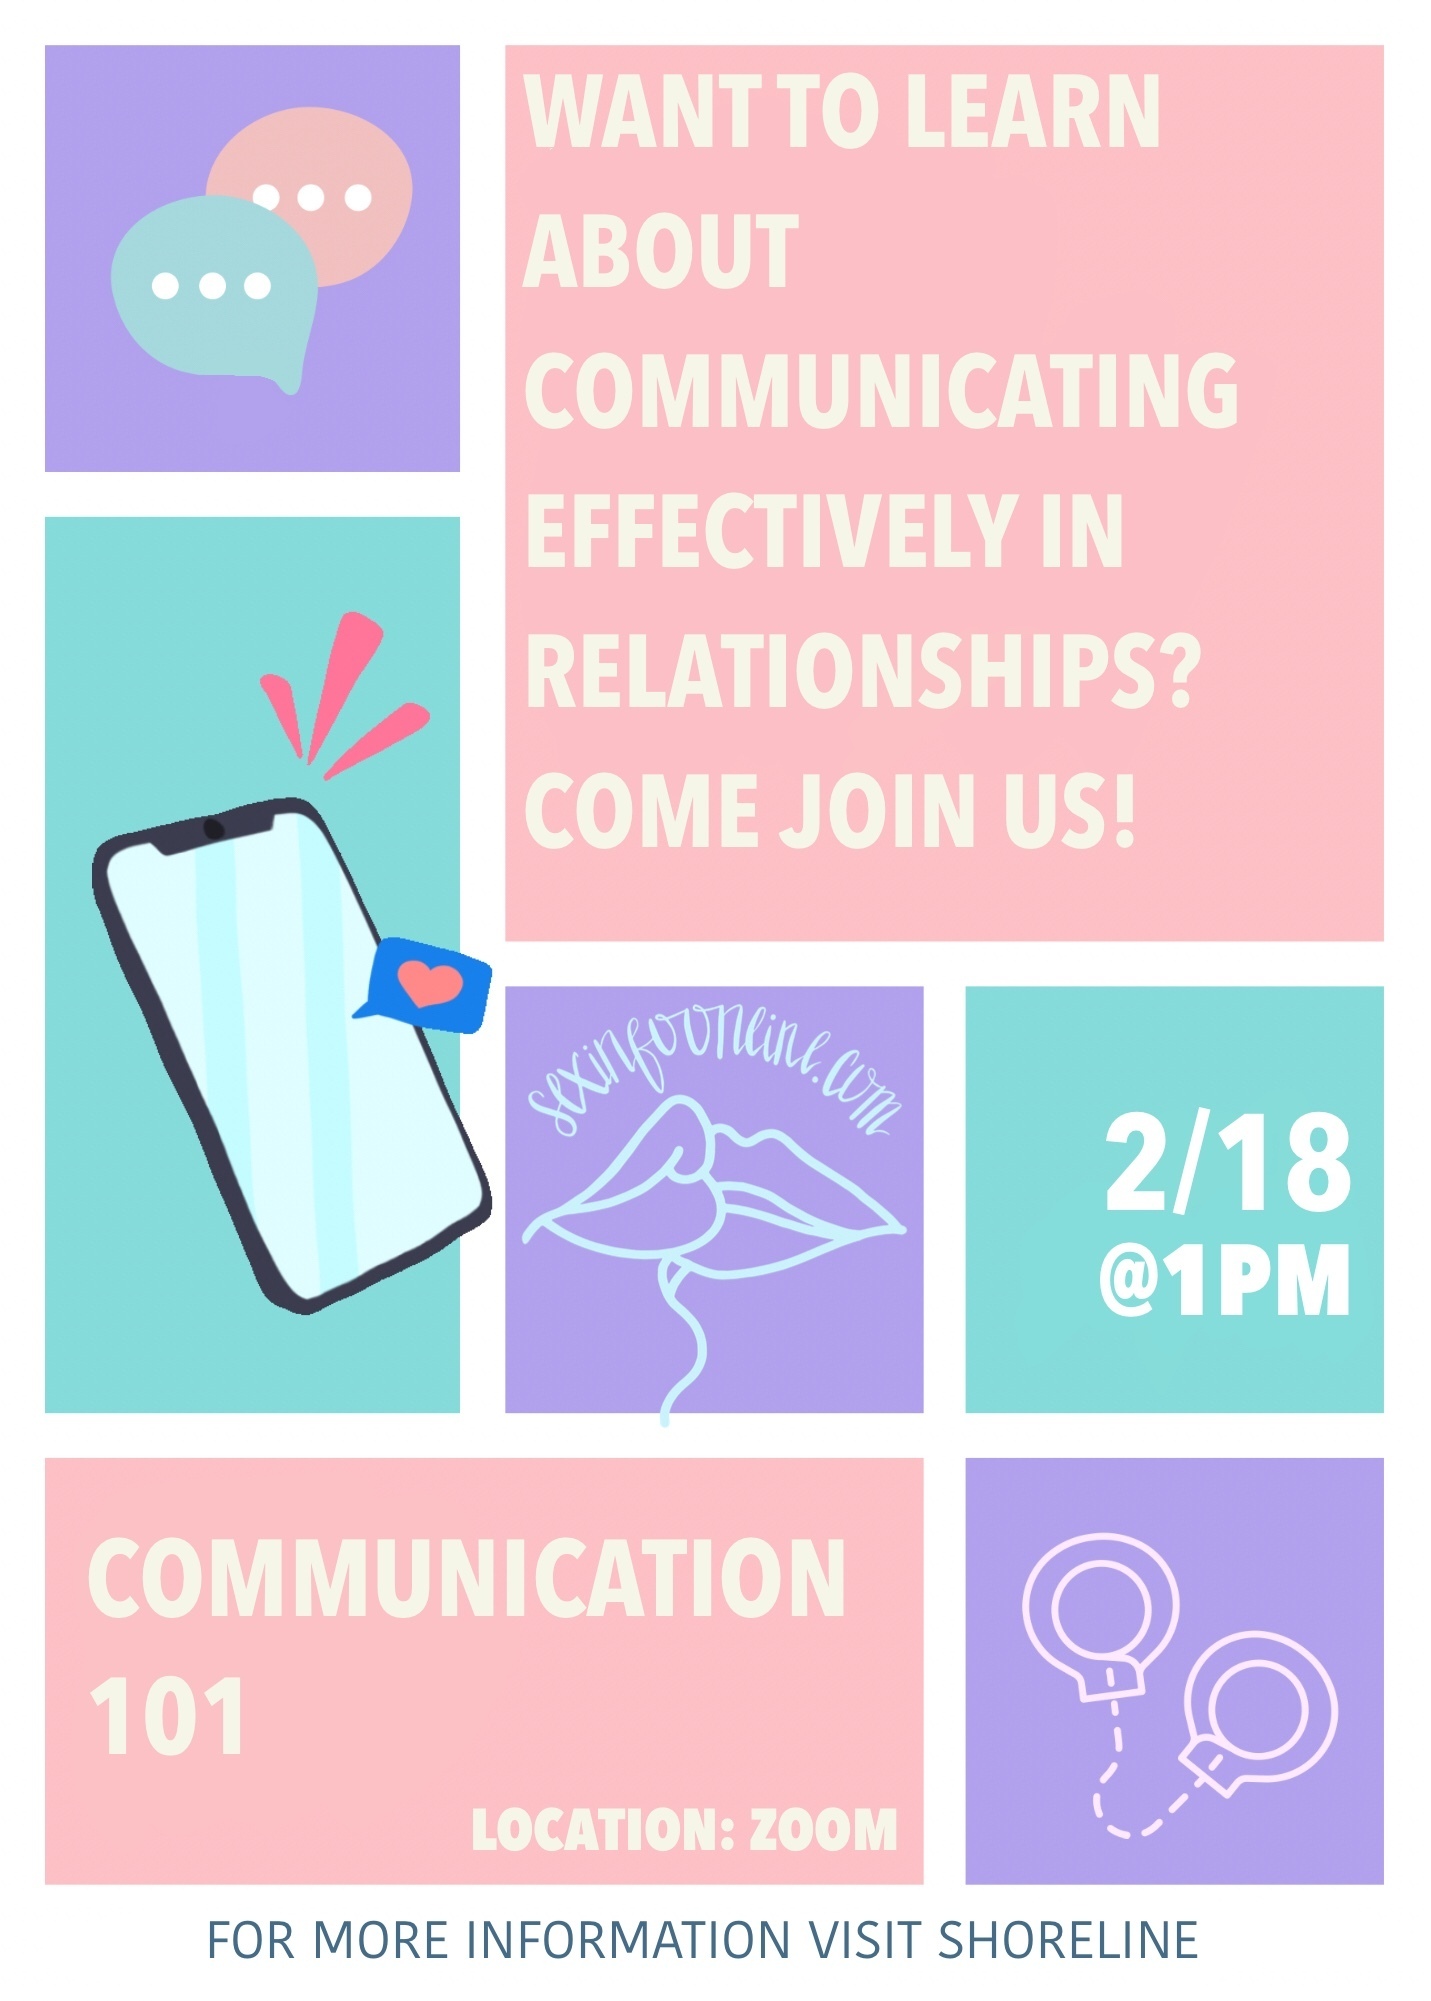 Effective Communication Workshop 2/18